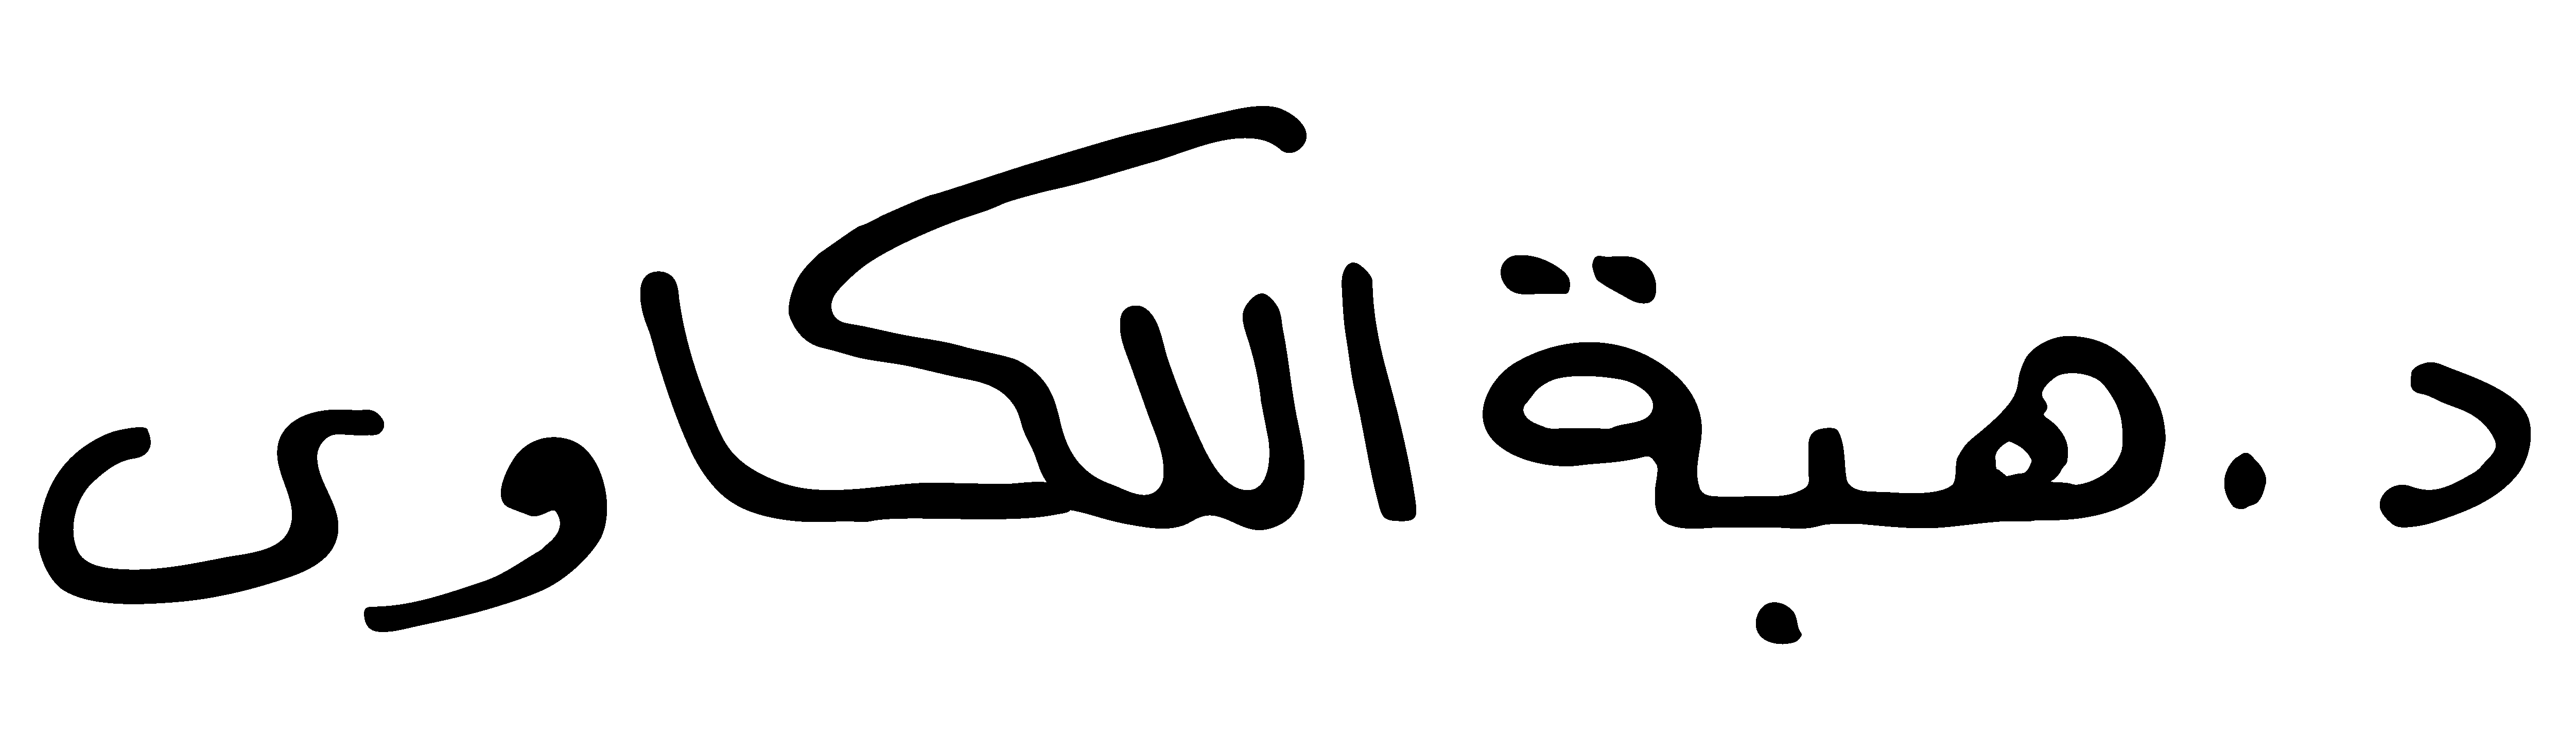 Heba Ellekkawy arabic signature